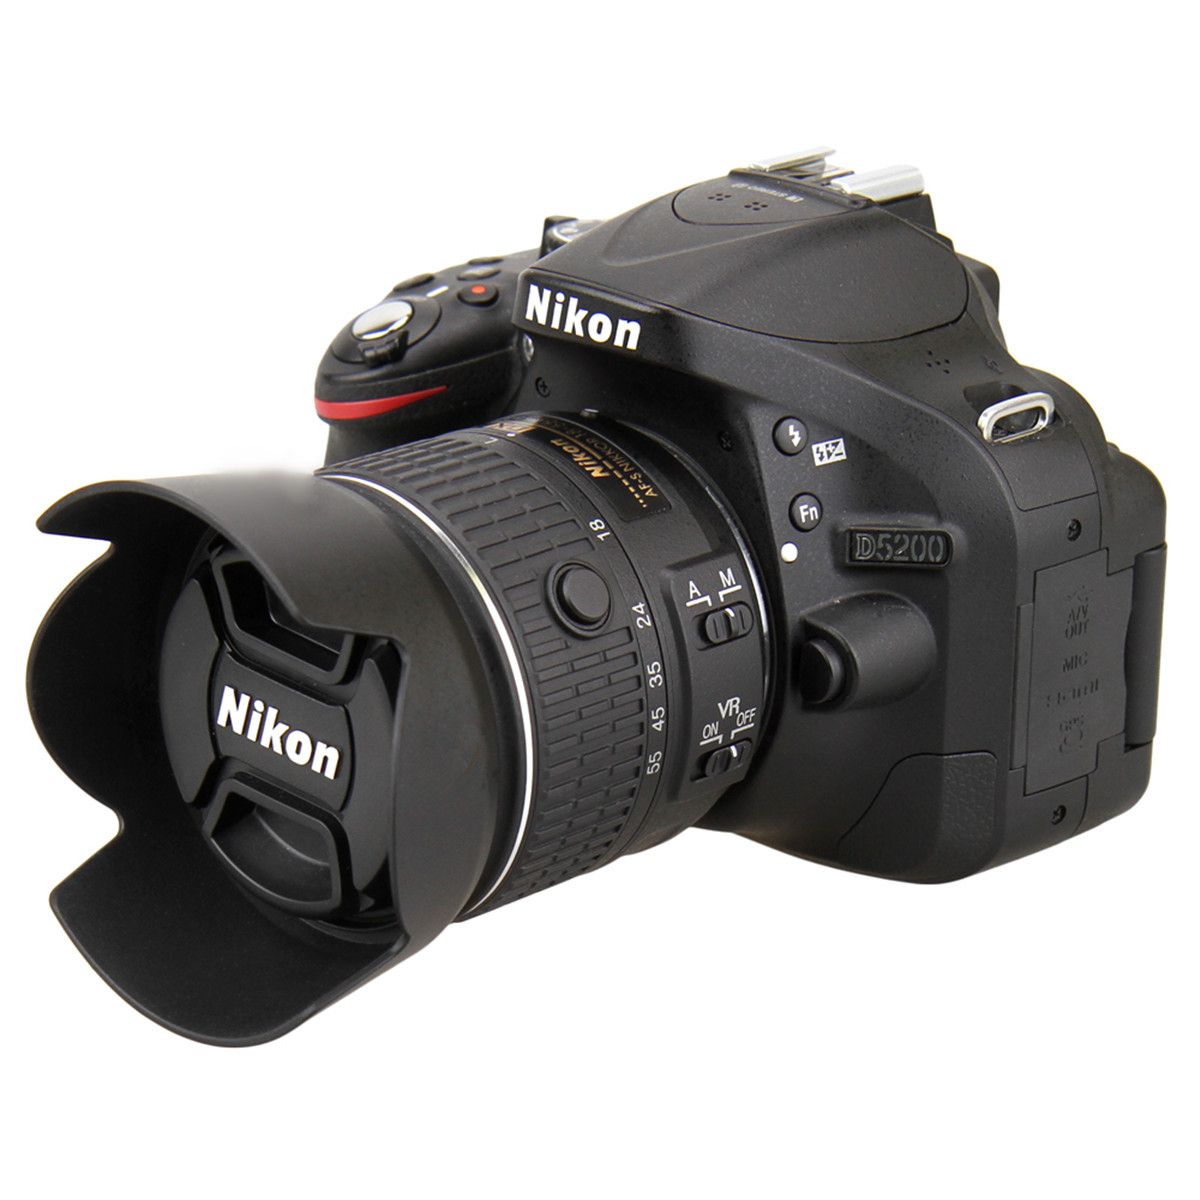 Bayonet-Shade-Flower-Lens-Hood-For-Nikon-HB-69-AF-S-DX-NIKKOR-18-55mm-f-35-56G-VR-II-D3200-D5200-1035069